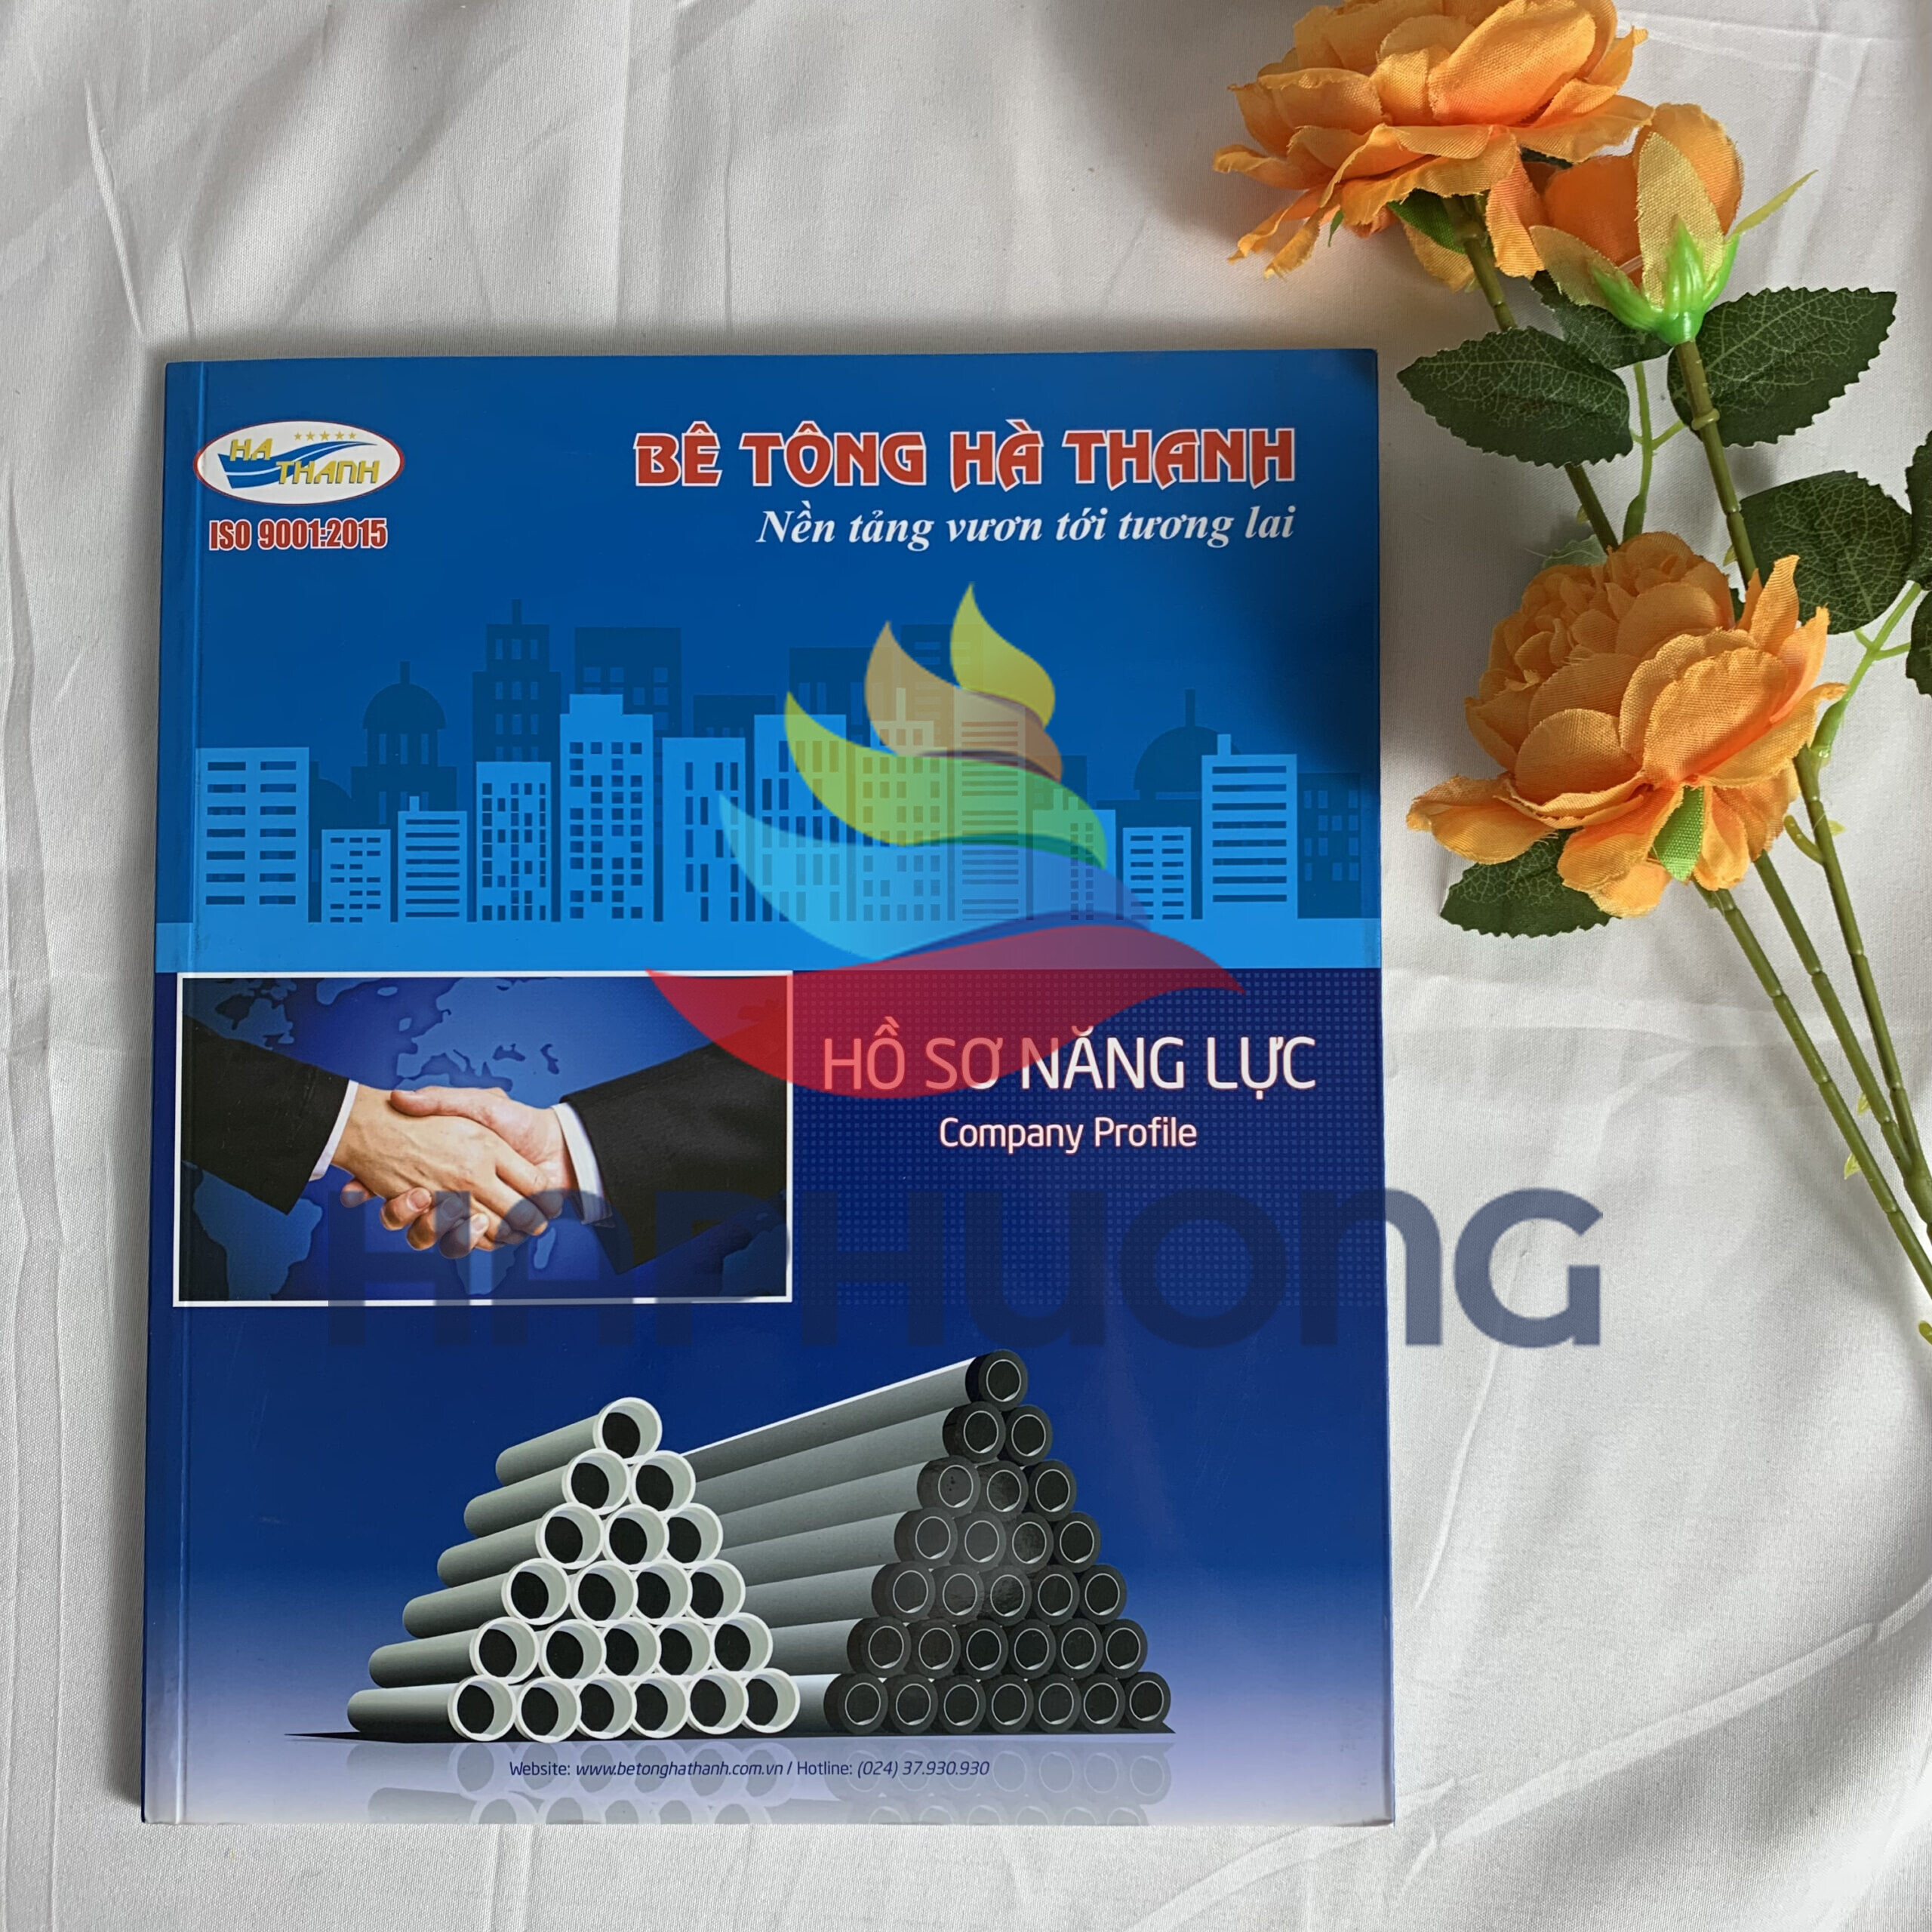 Catalogue giới thiệu công ty Bê tông Hà Thanh